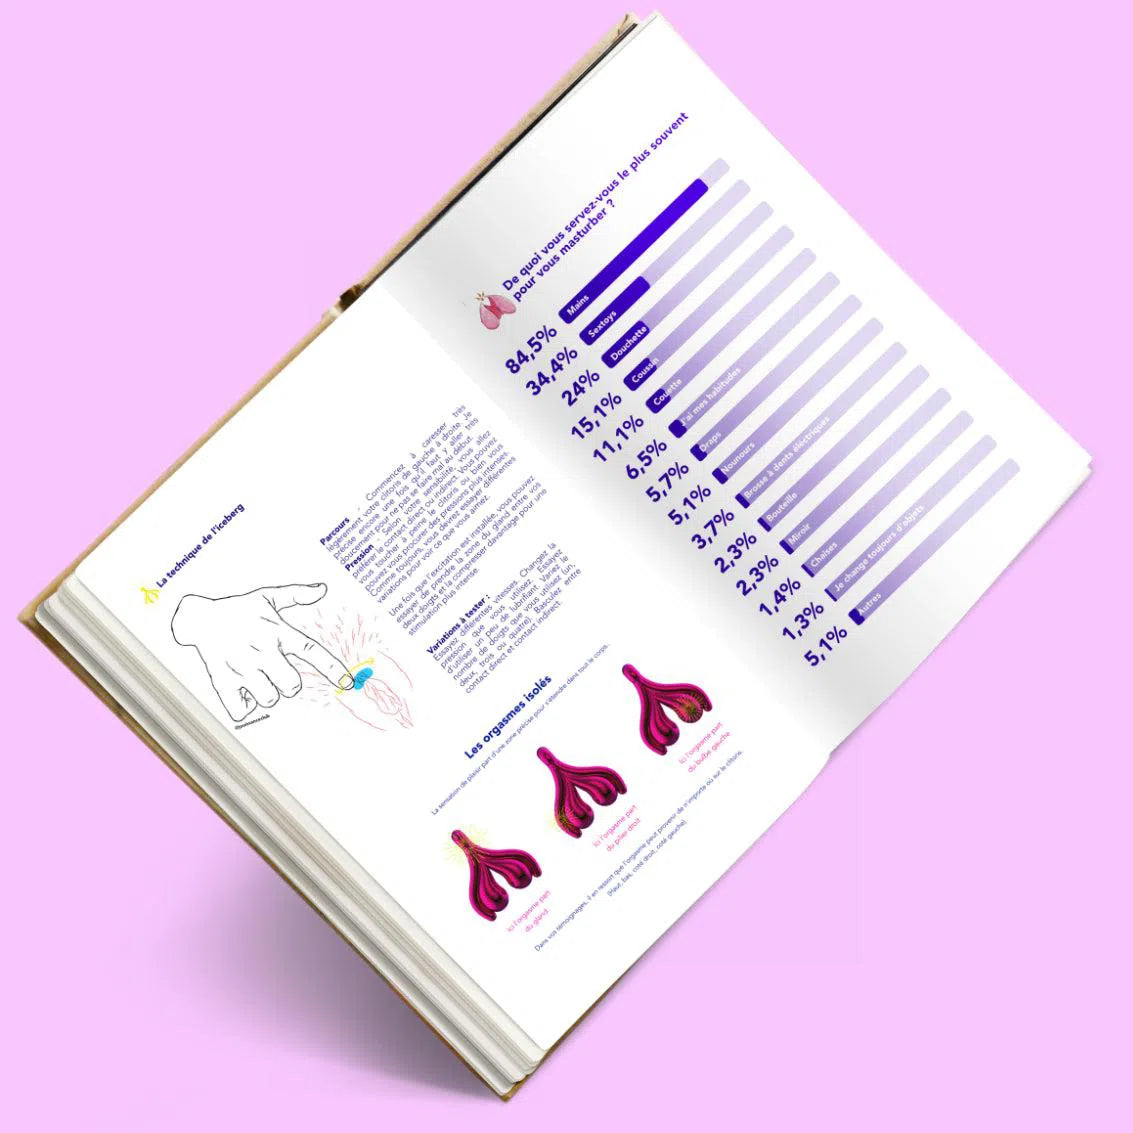 Le petit guide de la masturbation féminine de Julia Pietri ouvert sur des pages qui montrent le schéma anatomique de la vulve